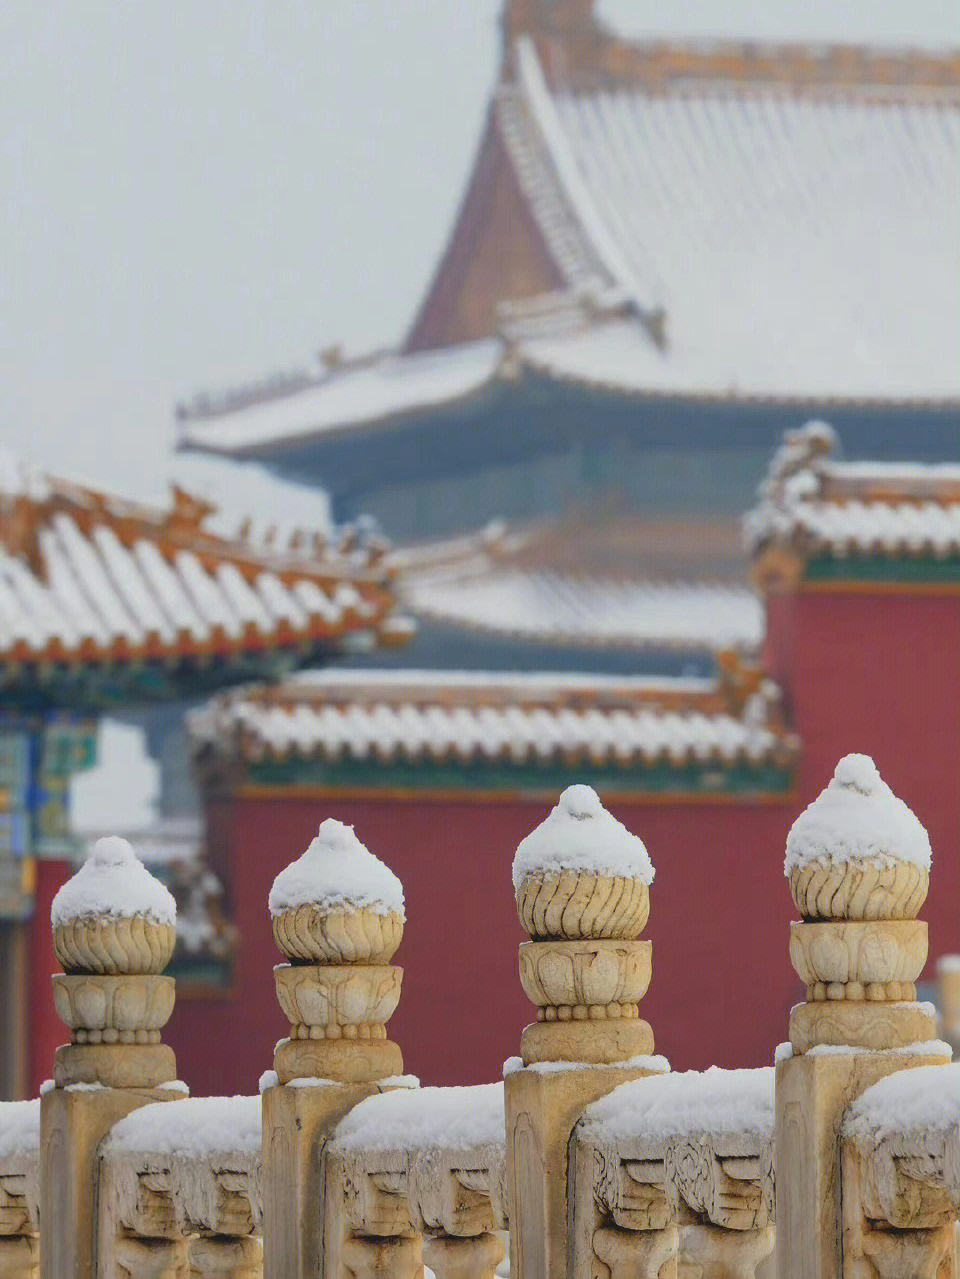 故宫雪景描写图片